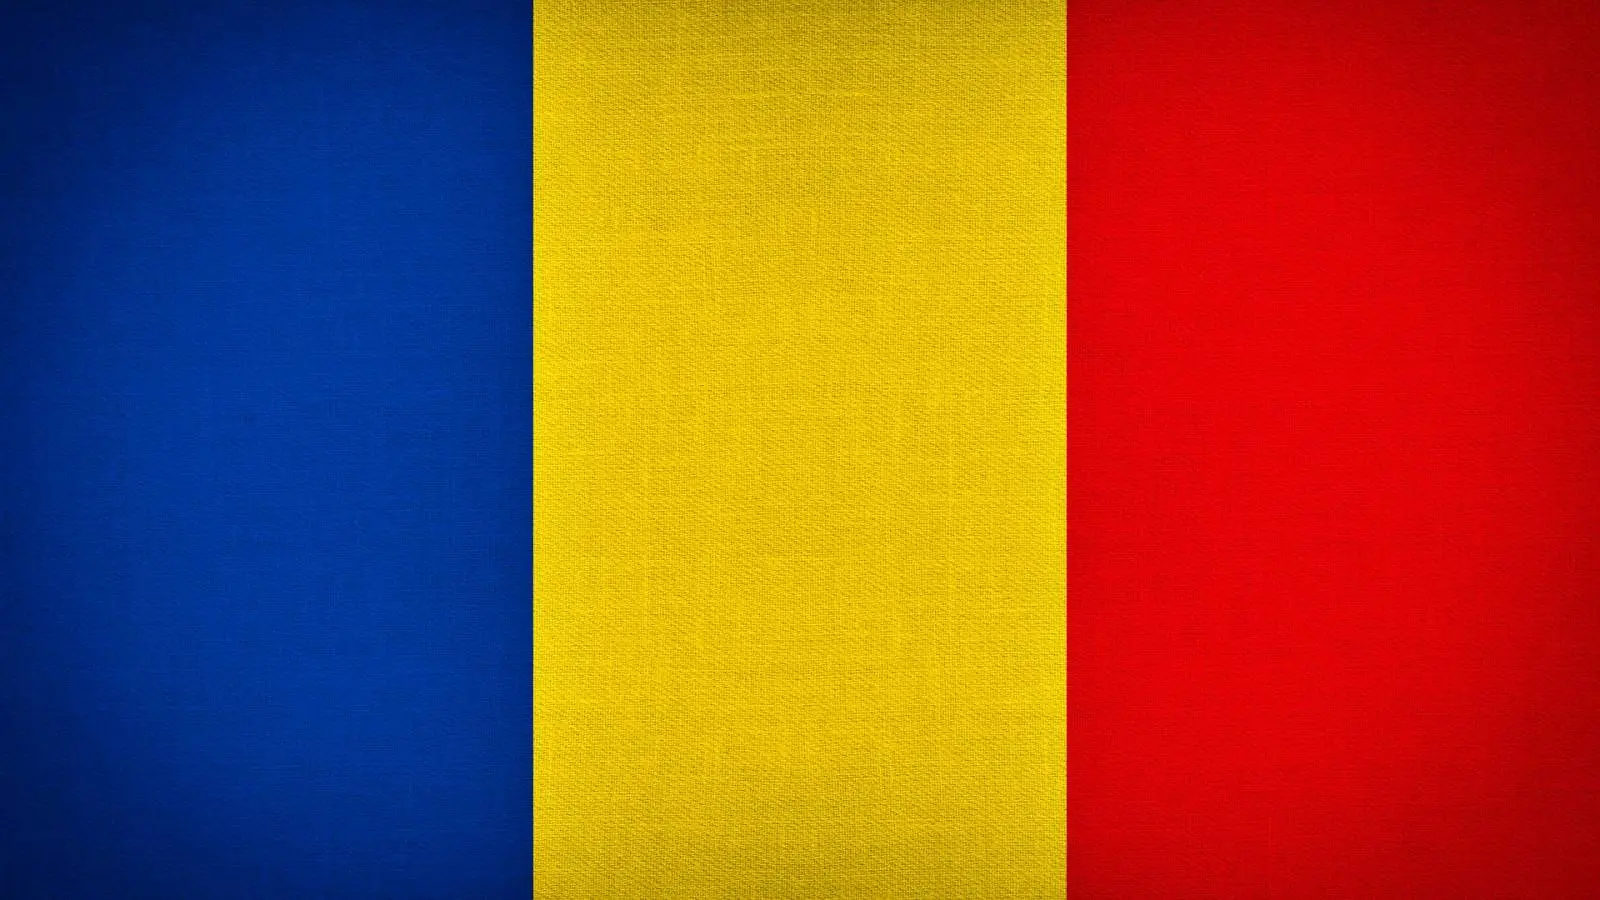 MApN:n ilmoitus sotilaseläkkeistä Romaniassa, NATOssa ja EU-maissa